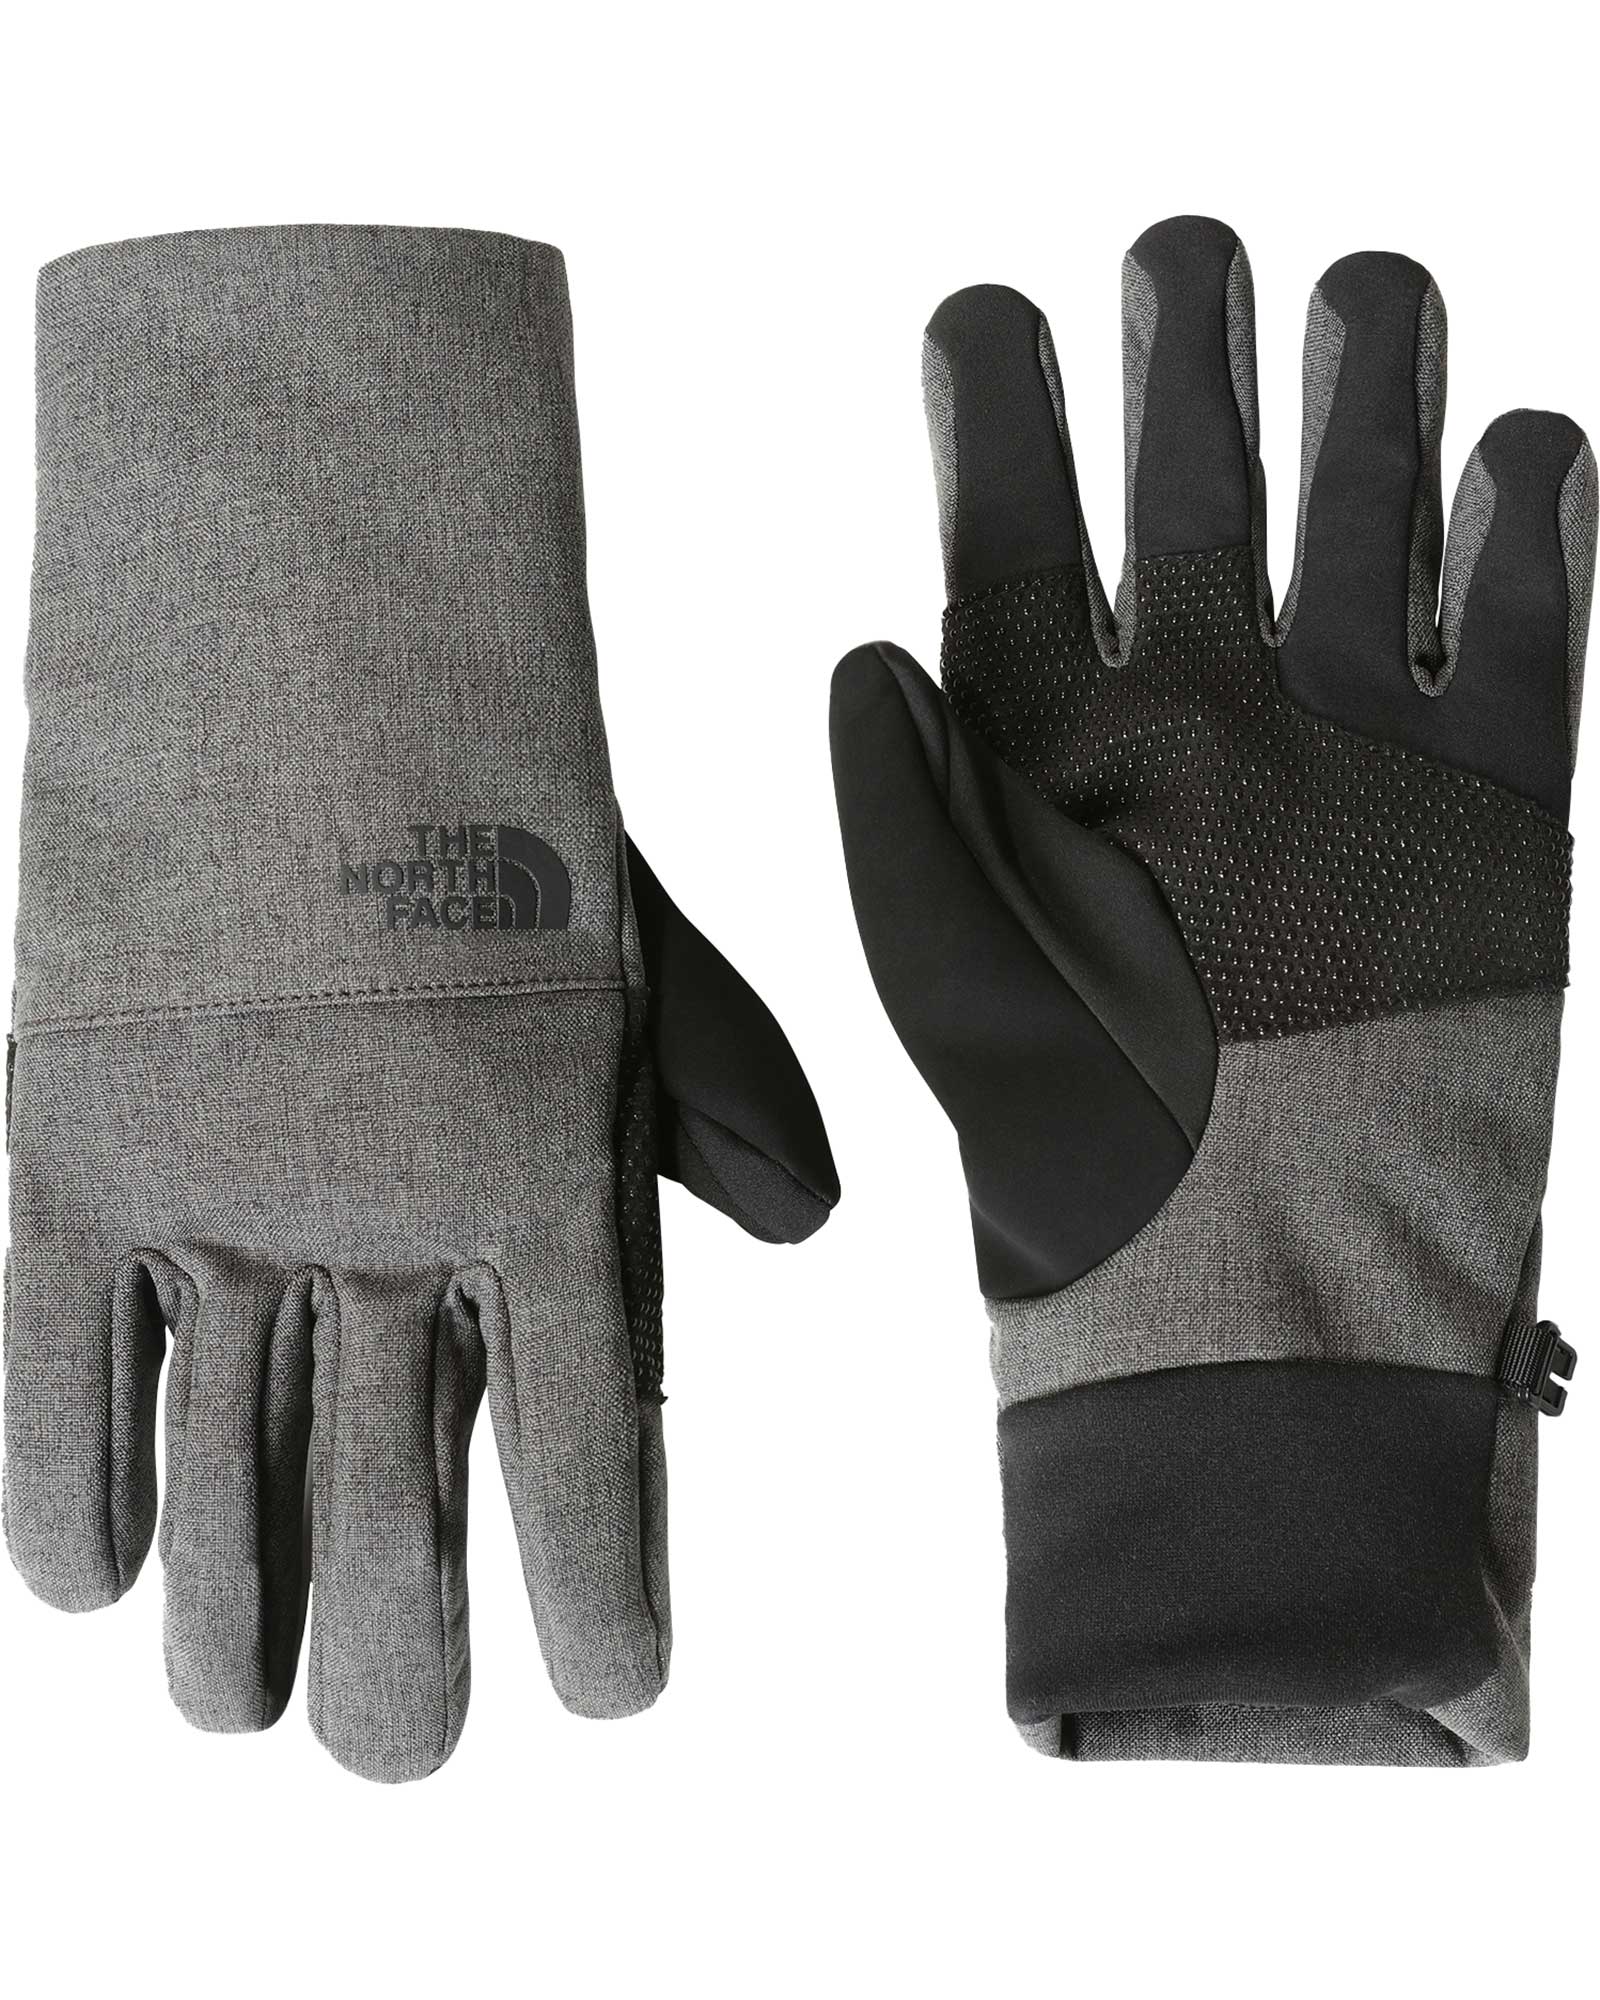 The North Face Apex Etip Men’s Gloves - TNF Dark Grey Heather M